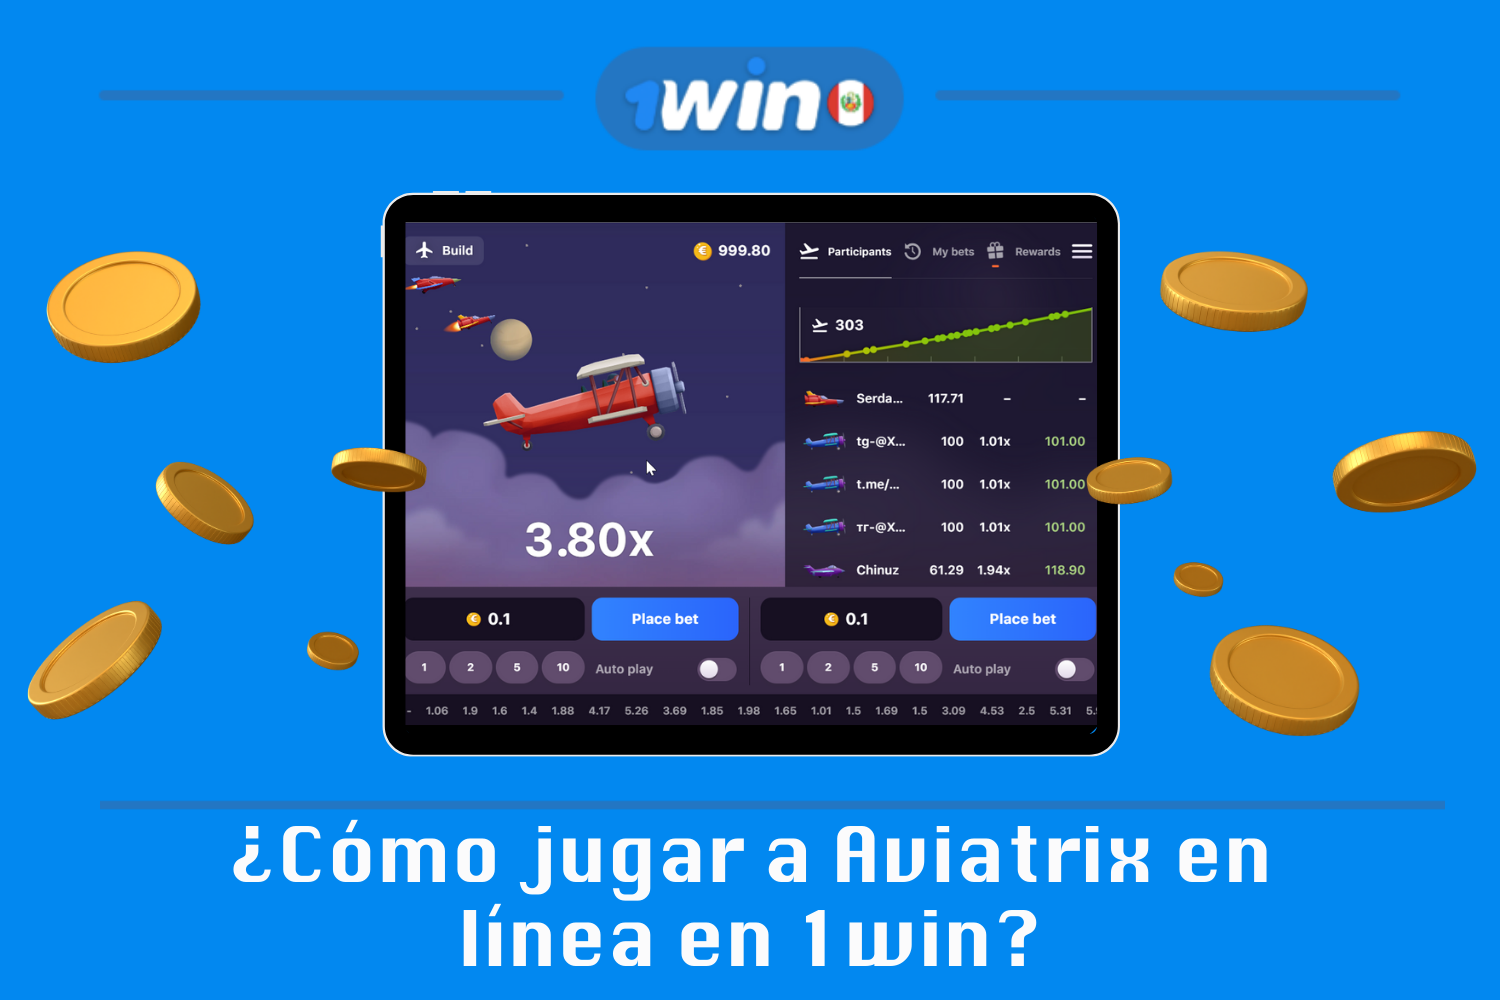 Los jugadores peruanos mayores de 18 años pueden jugar 1win Aviatrix por dinero real siguiendo estas instrucciones paso a paso.